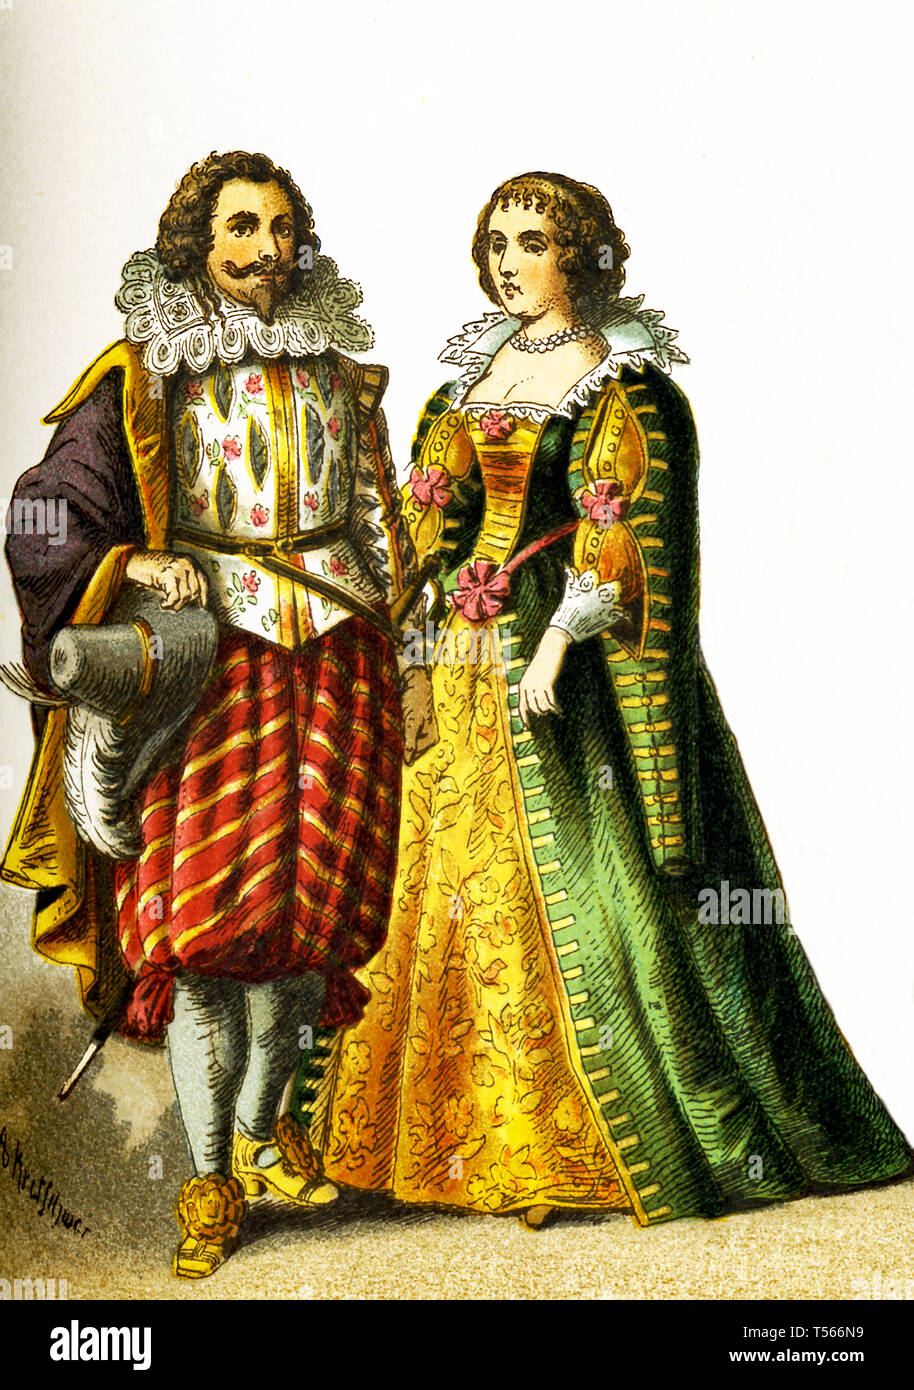 Les chiffres représentent le peuple français dans les années 1600. Ils sont, de gauche à droite : un cavalier et une femme de rang. Cette illustration dates pour 1882. Banque D'Images